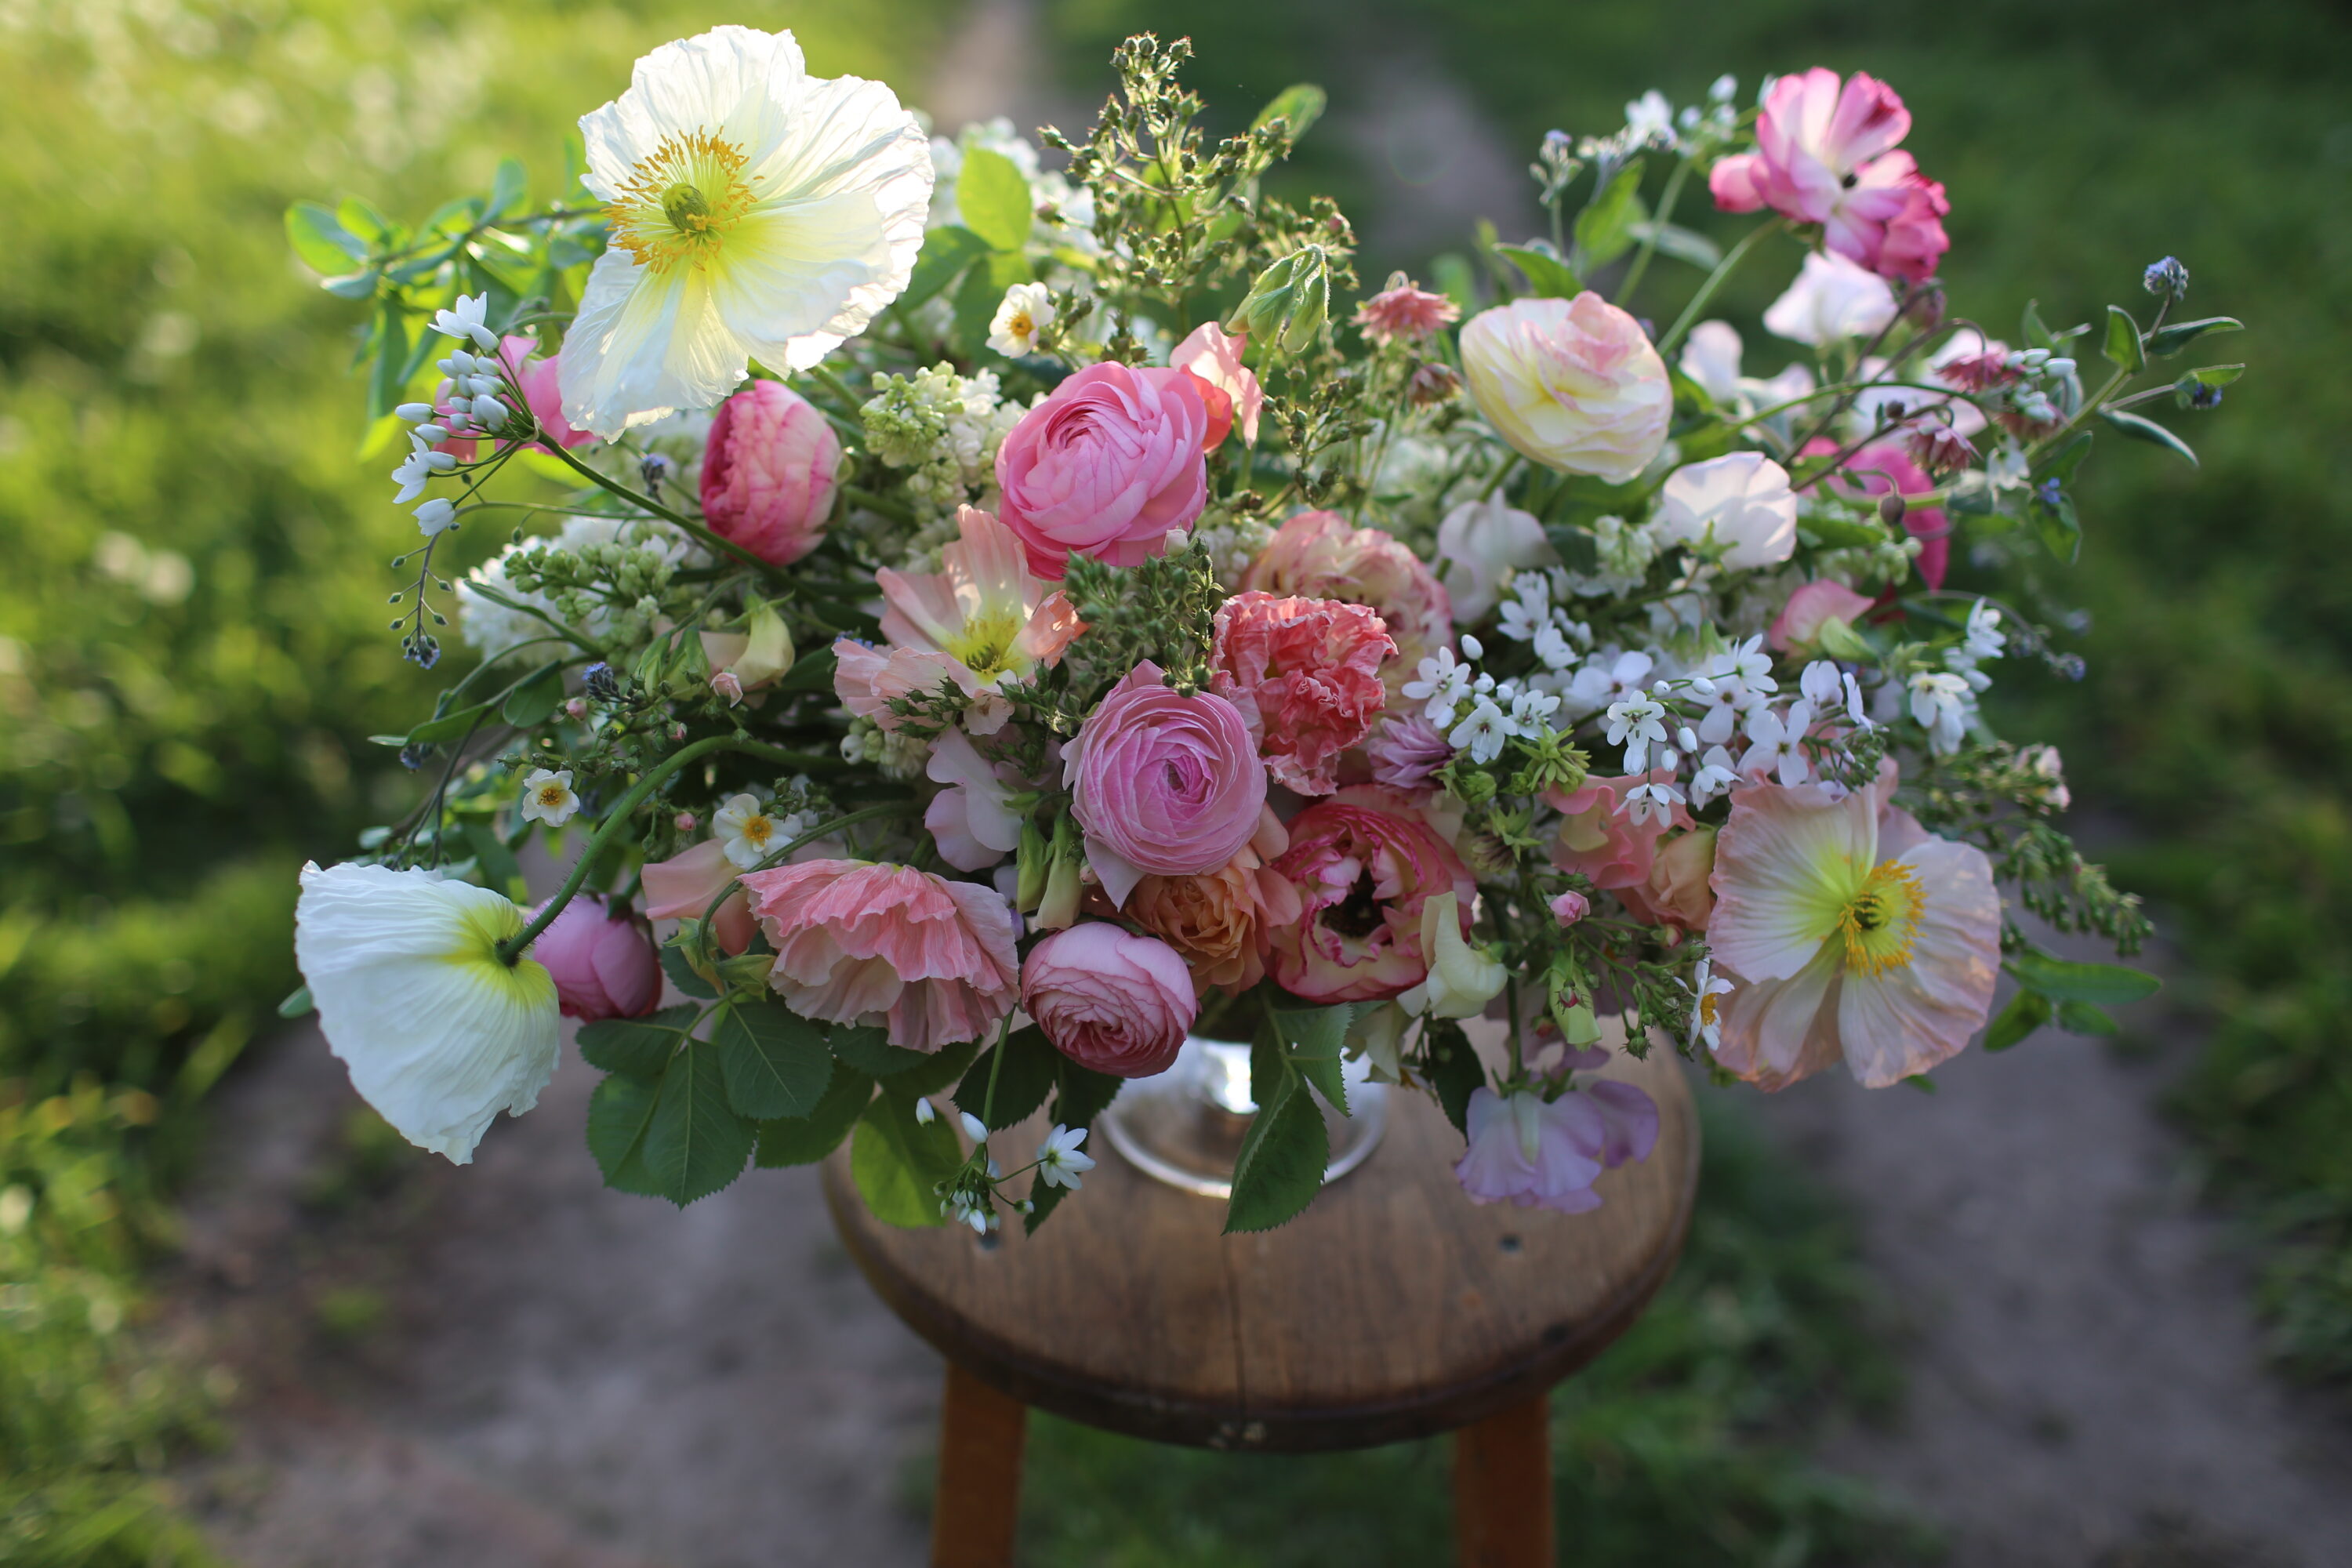 A flower arrangement